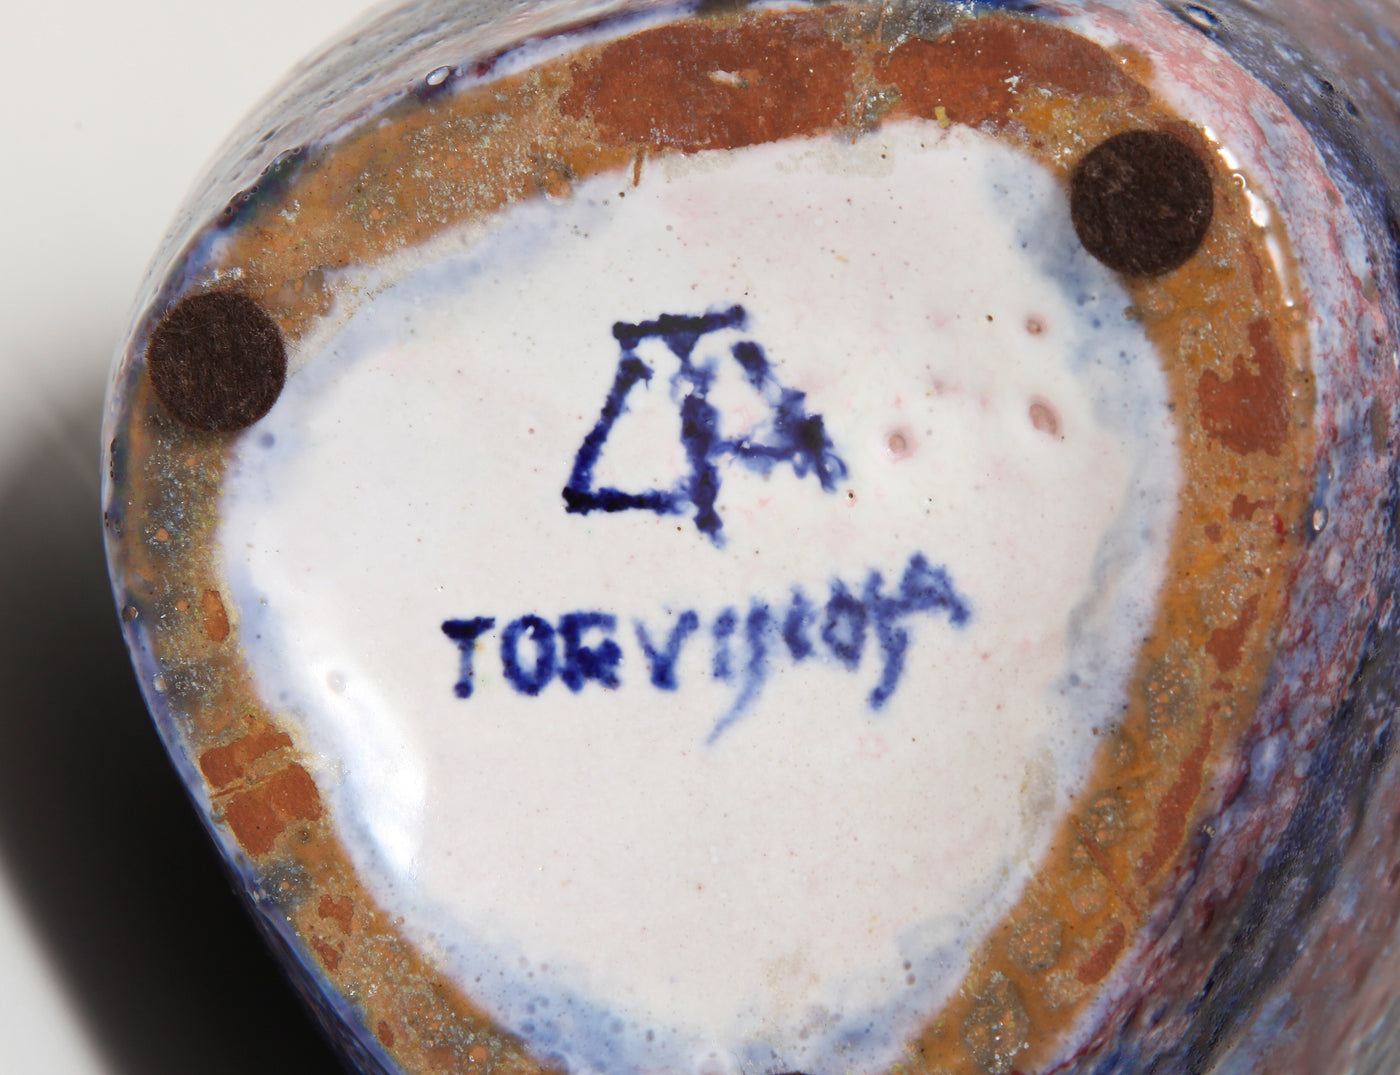 Handmade Ceramic Bottle by Torviscosa